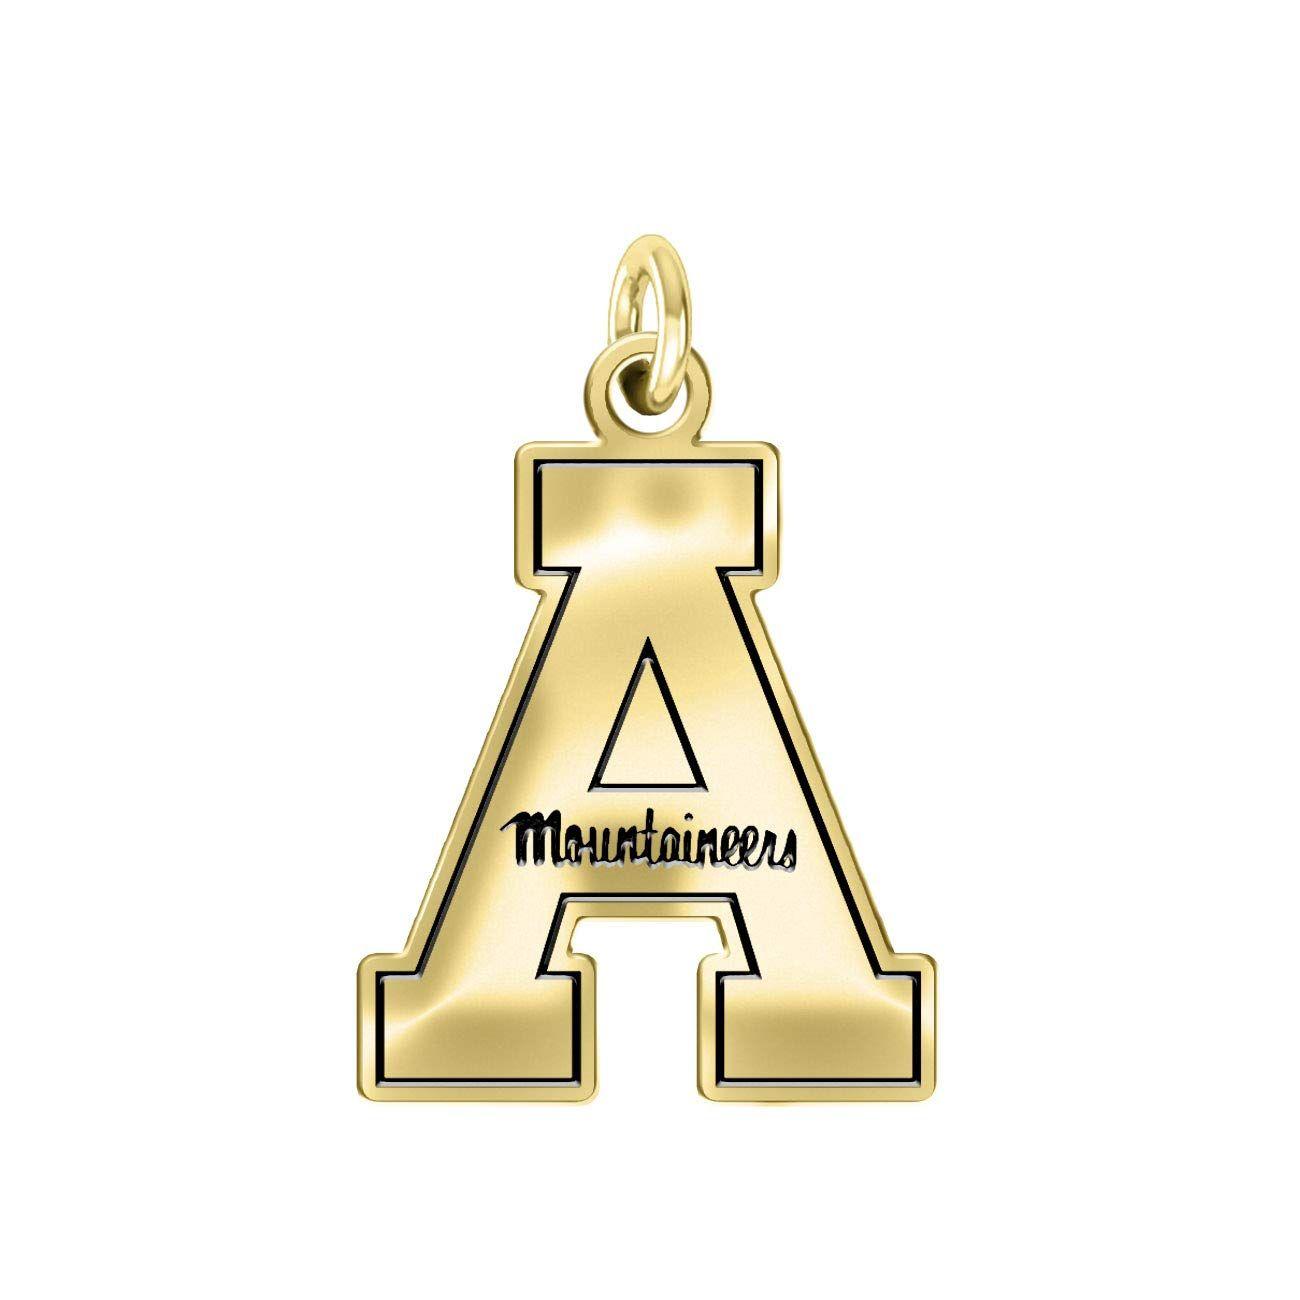 Appalachian State University Logo - Amazon.com: College Jewelry Appalachian State University ...